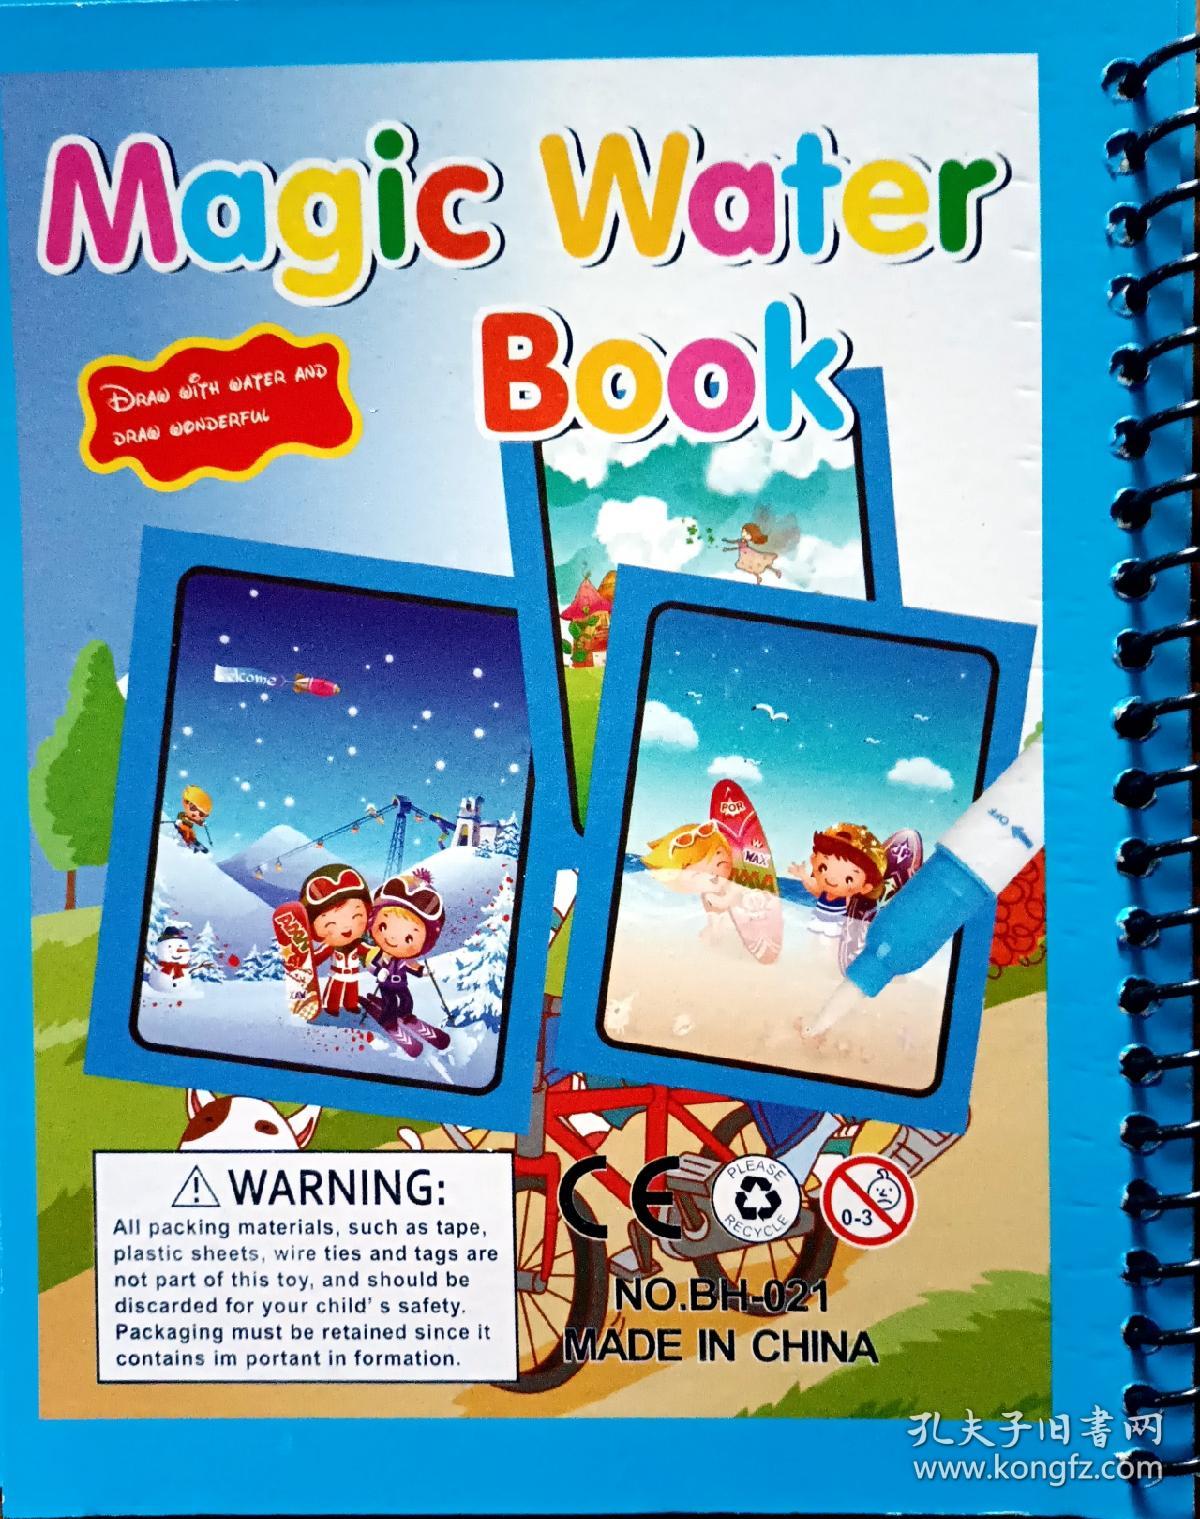 Nagic  Water  Book